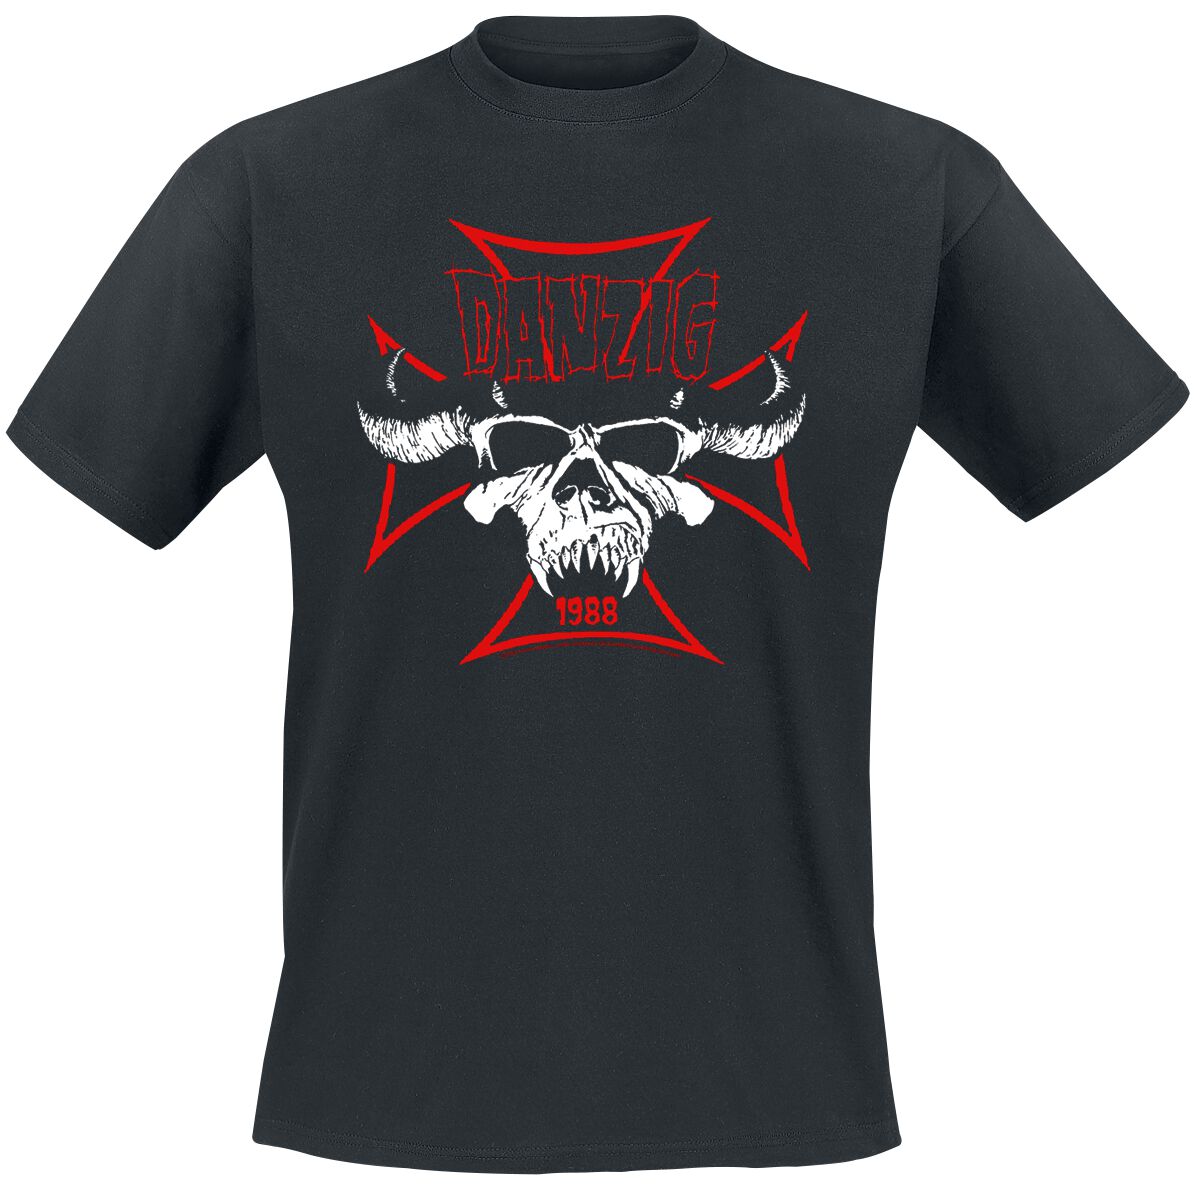 Danzig T-Shirt - Cross Skull - S bis 3XL - für Männer - Größe L - schwarz  - Lizenziertes Merchandise!